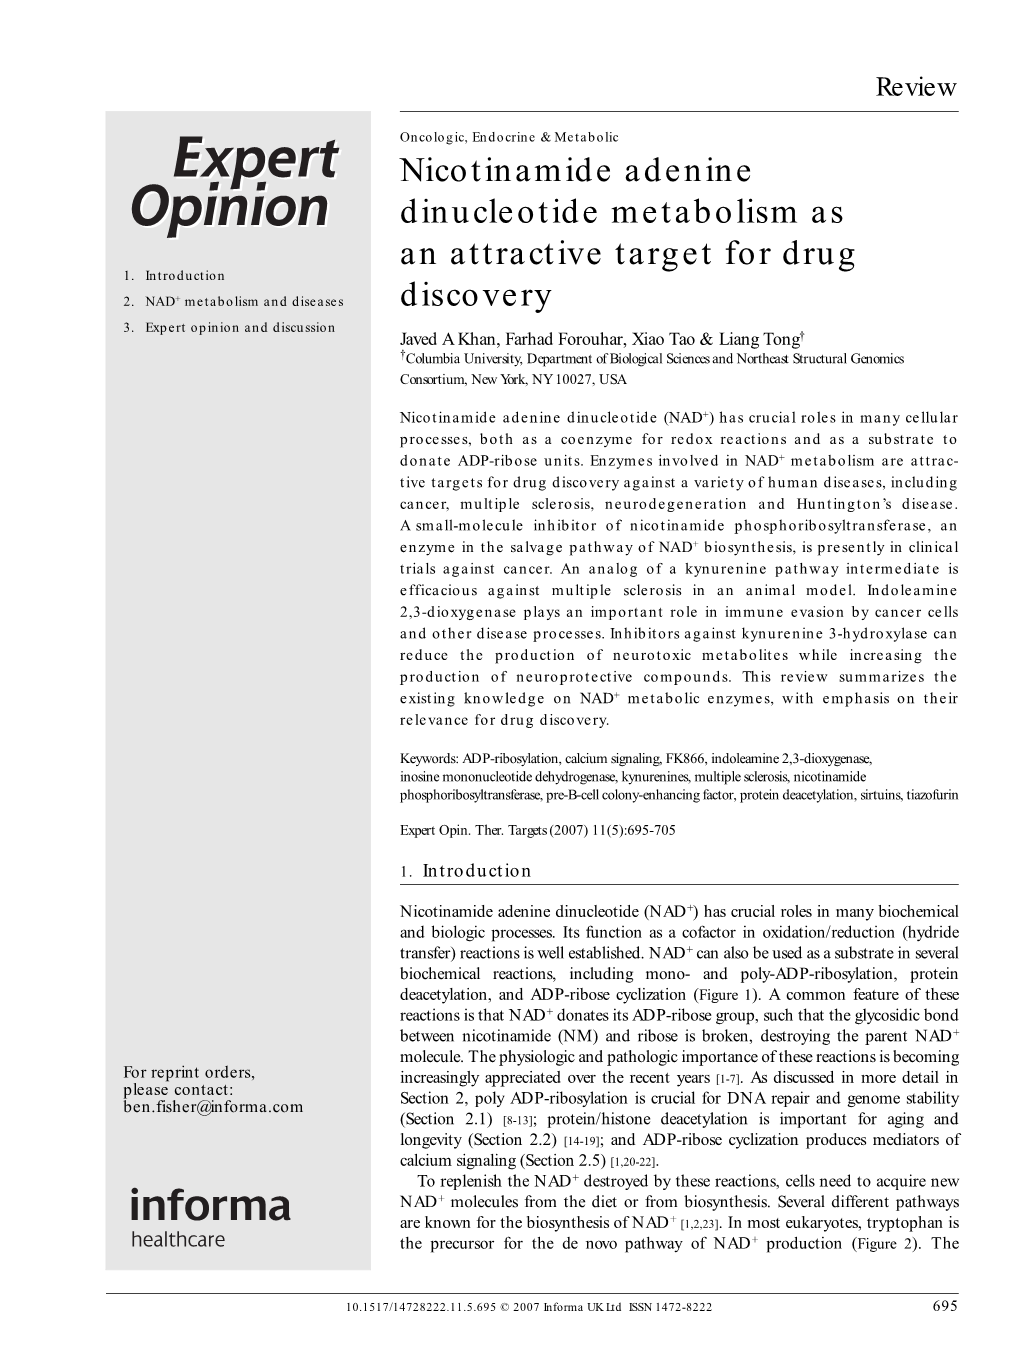 Nicotinamide Adenine Dinucleotide Metabolism As an Attractive Target for Drug 1